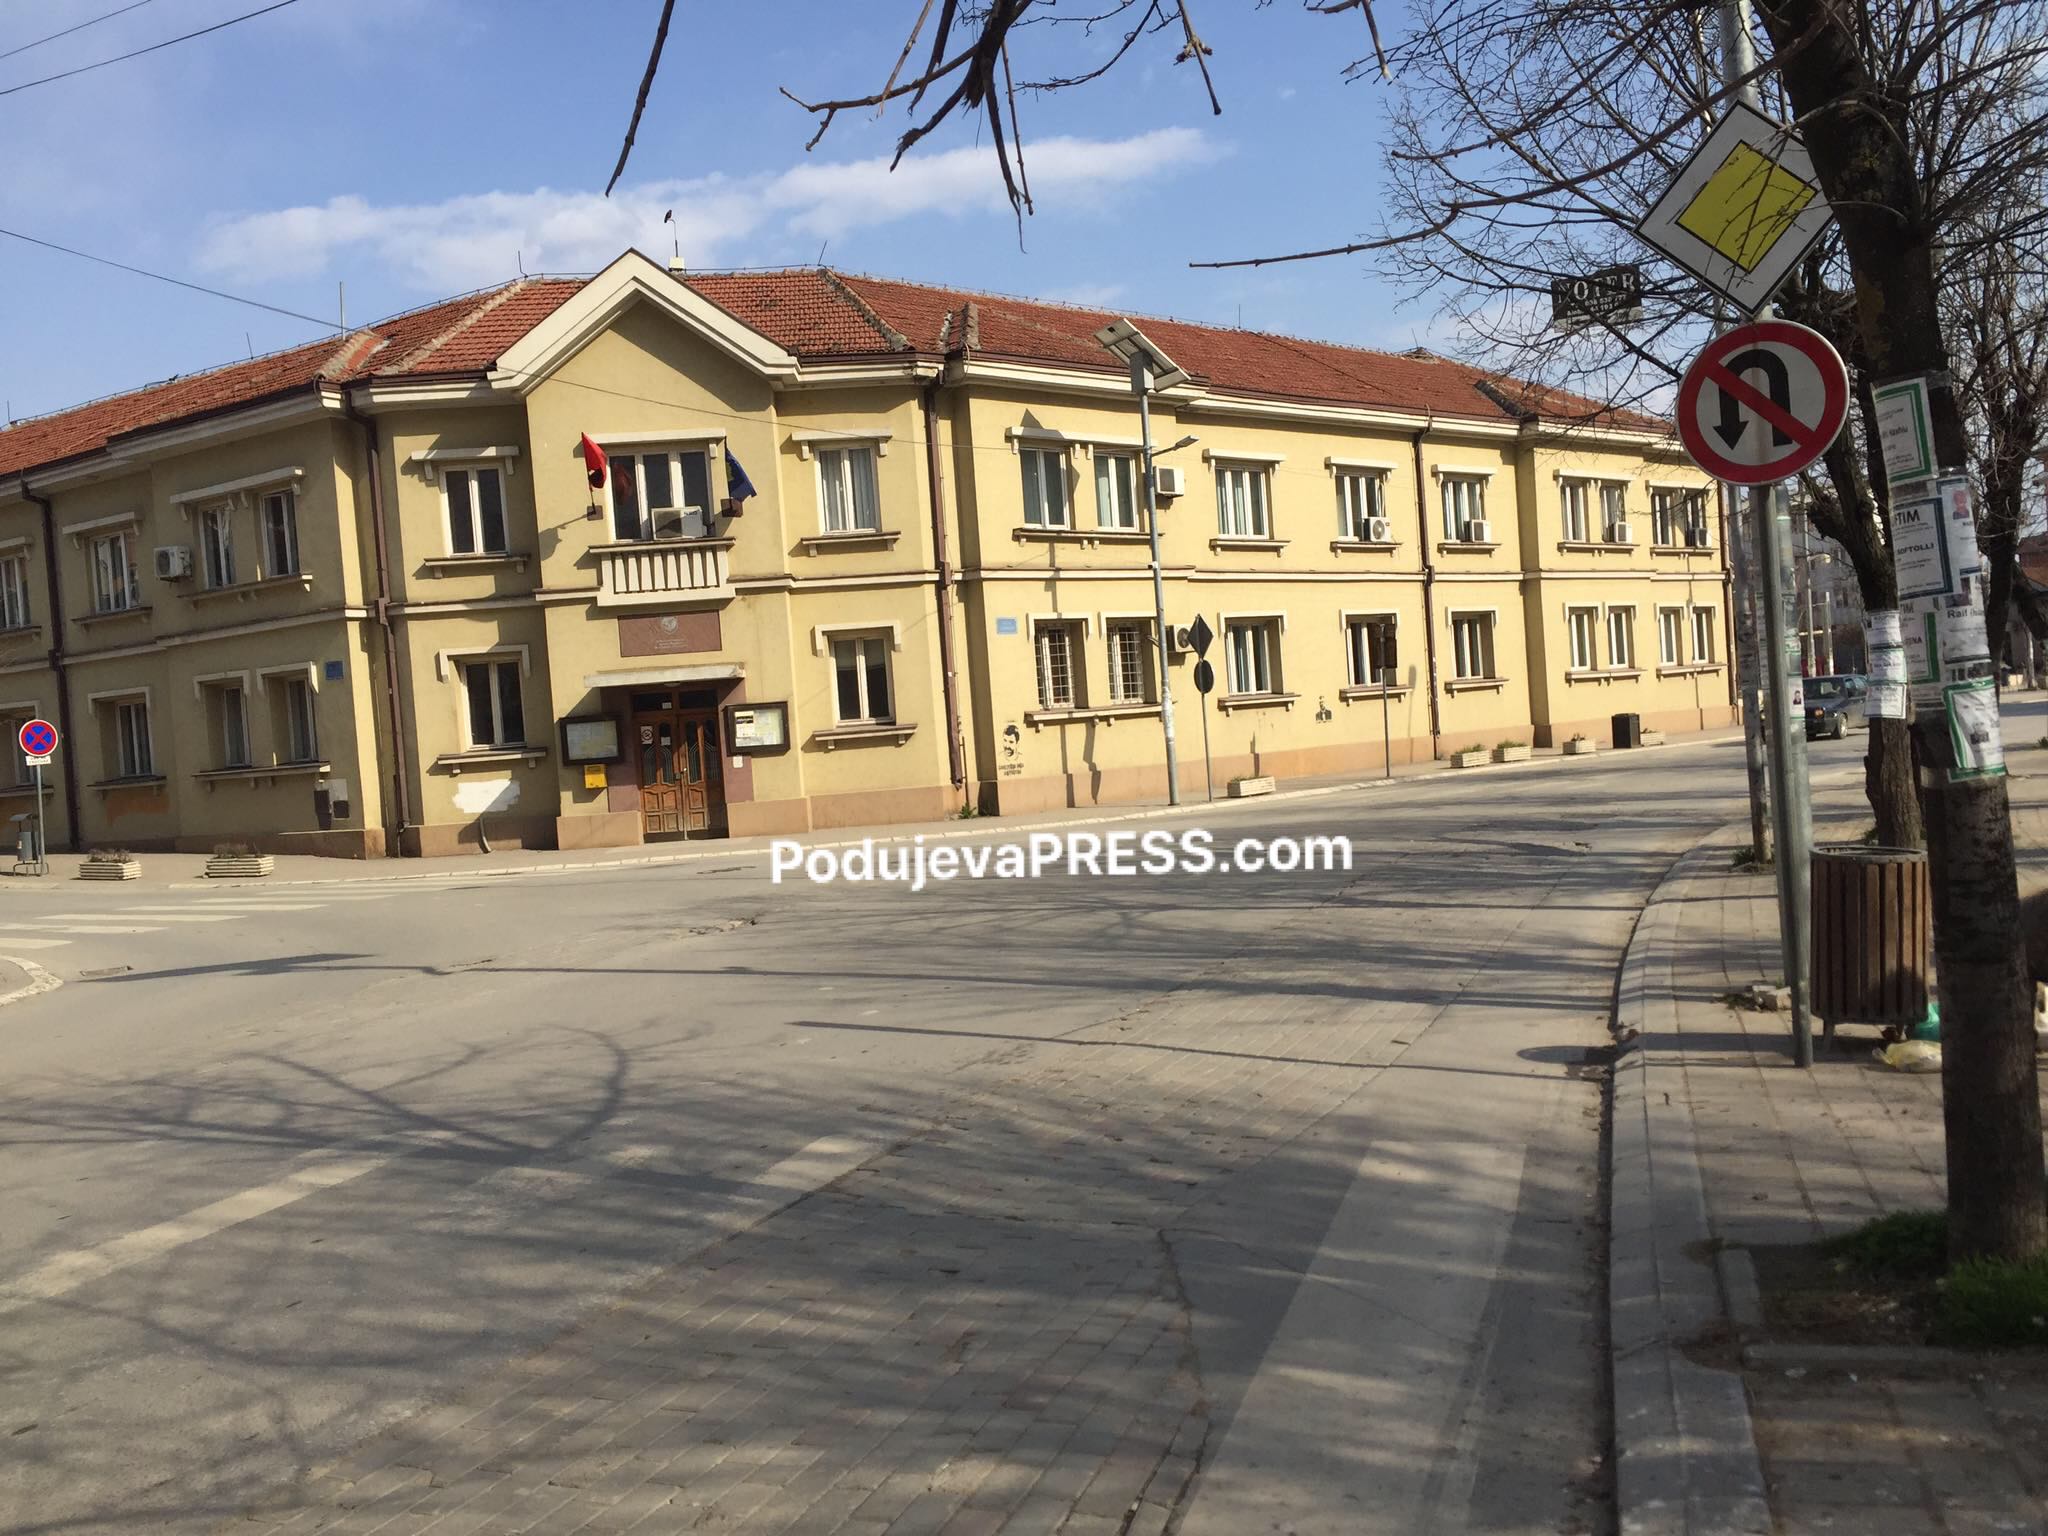  Komuna e Podujevës ka një kërkesë për bizneset